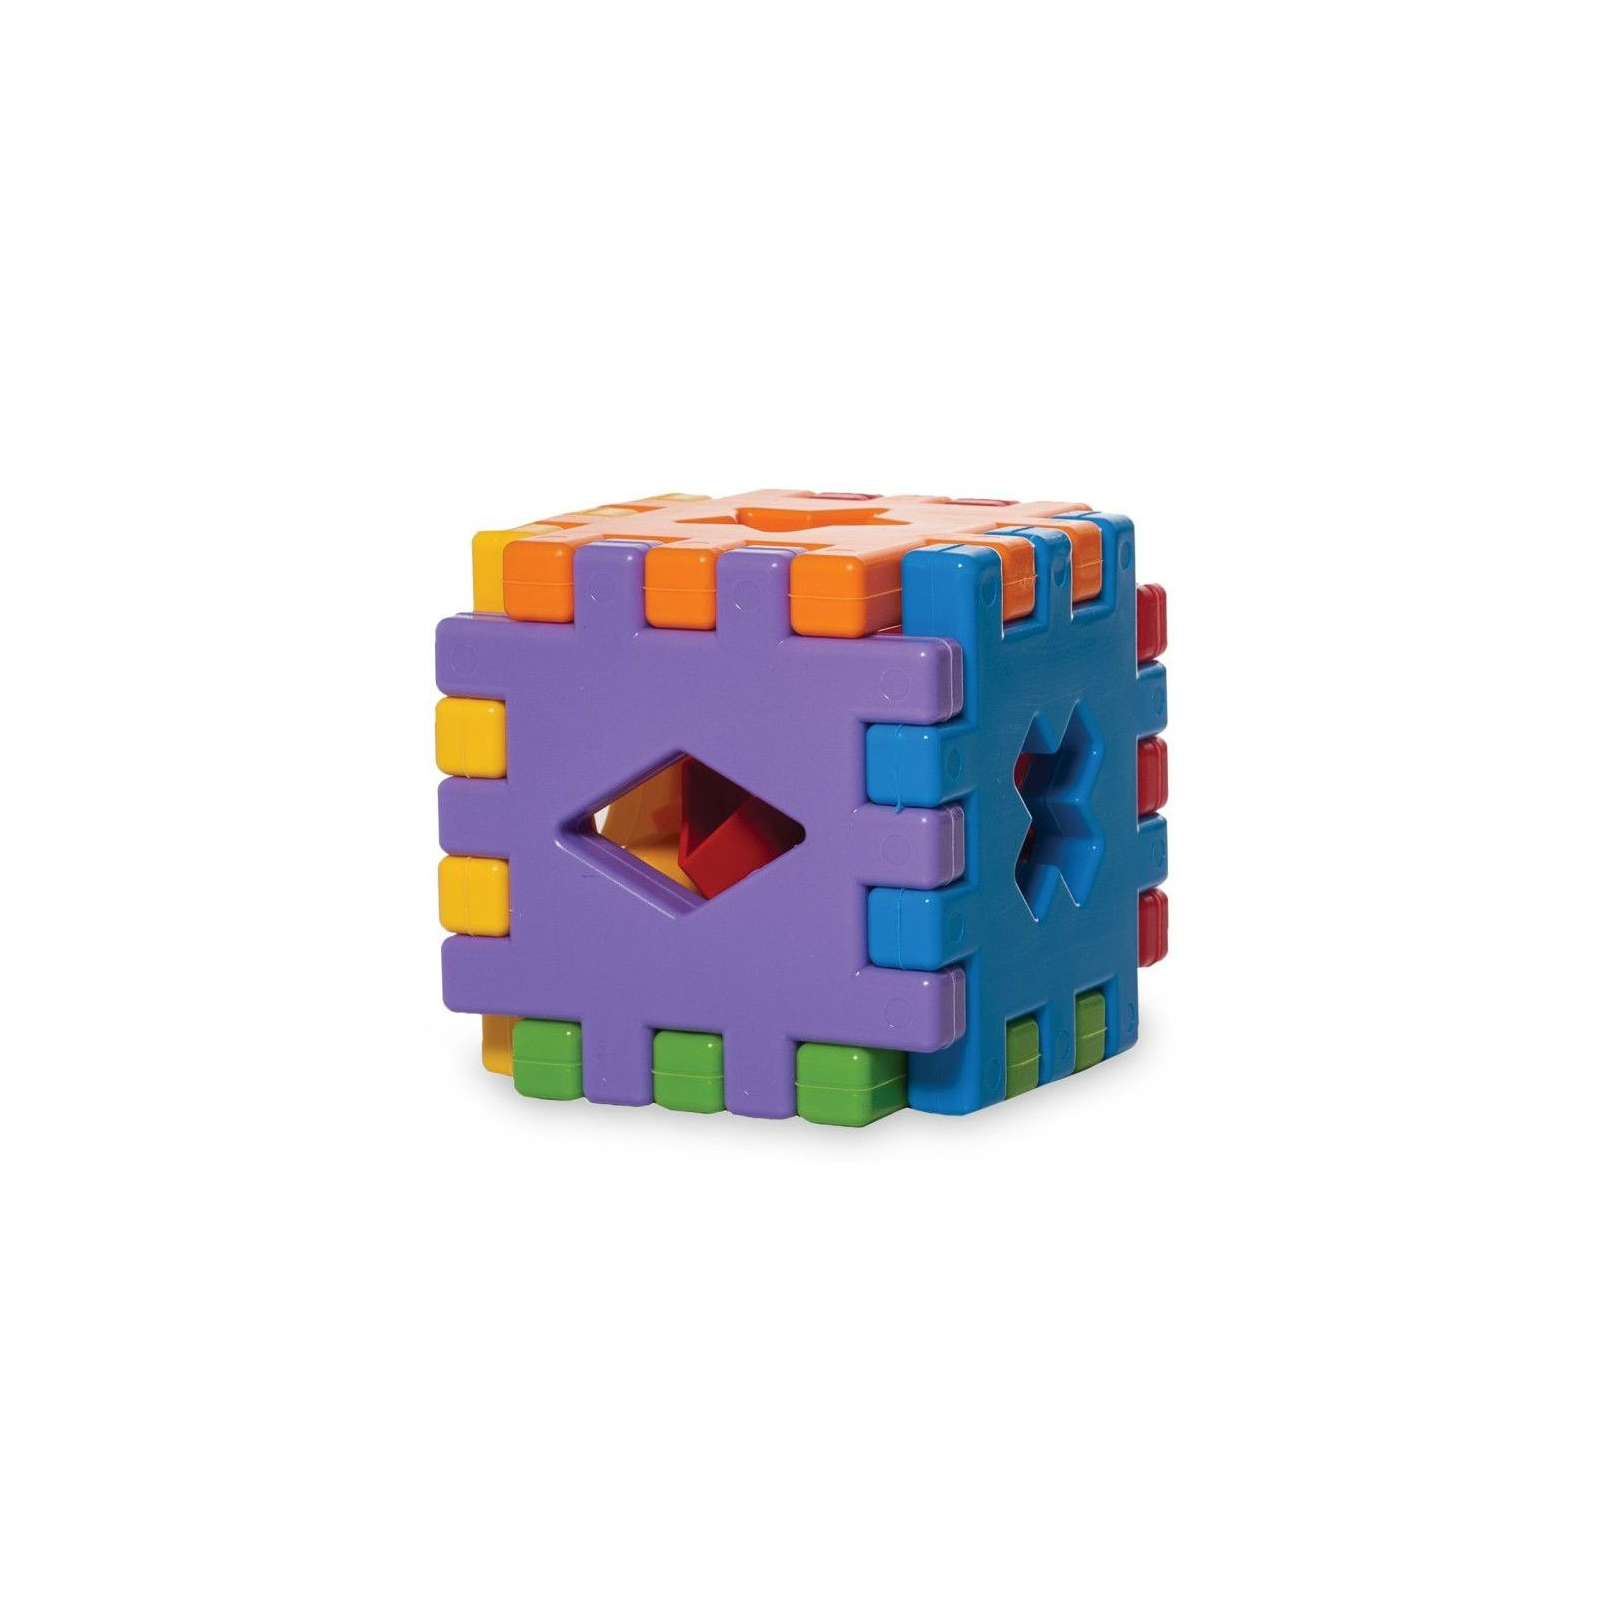 Розвиваюча іграшка Tigres Чарівний куб 12 елементів (39176)